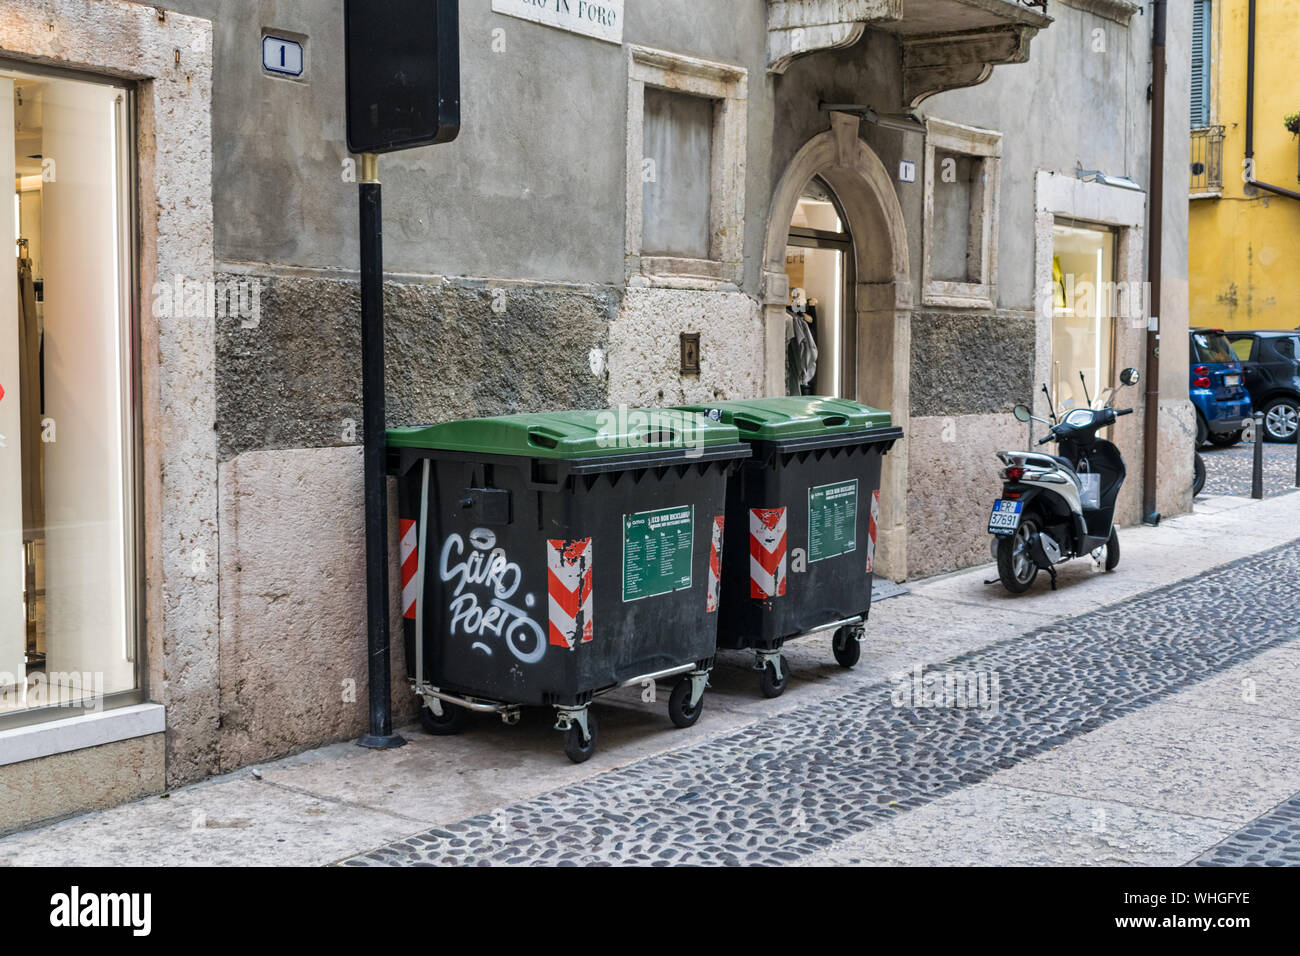 Vérone, Italie - 27 juillet 2019 : TCity de poubelles sur le côté de la rue à Vérone Italie Banque D'Images